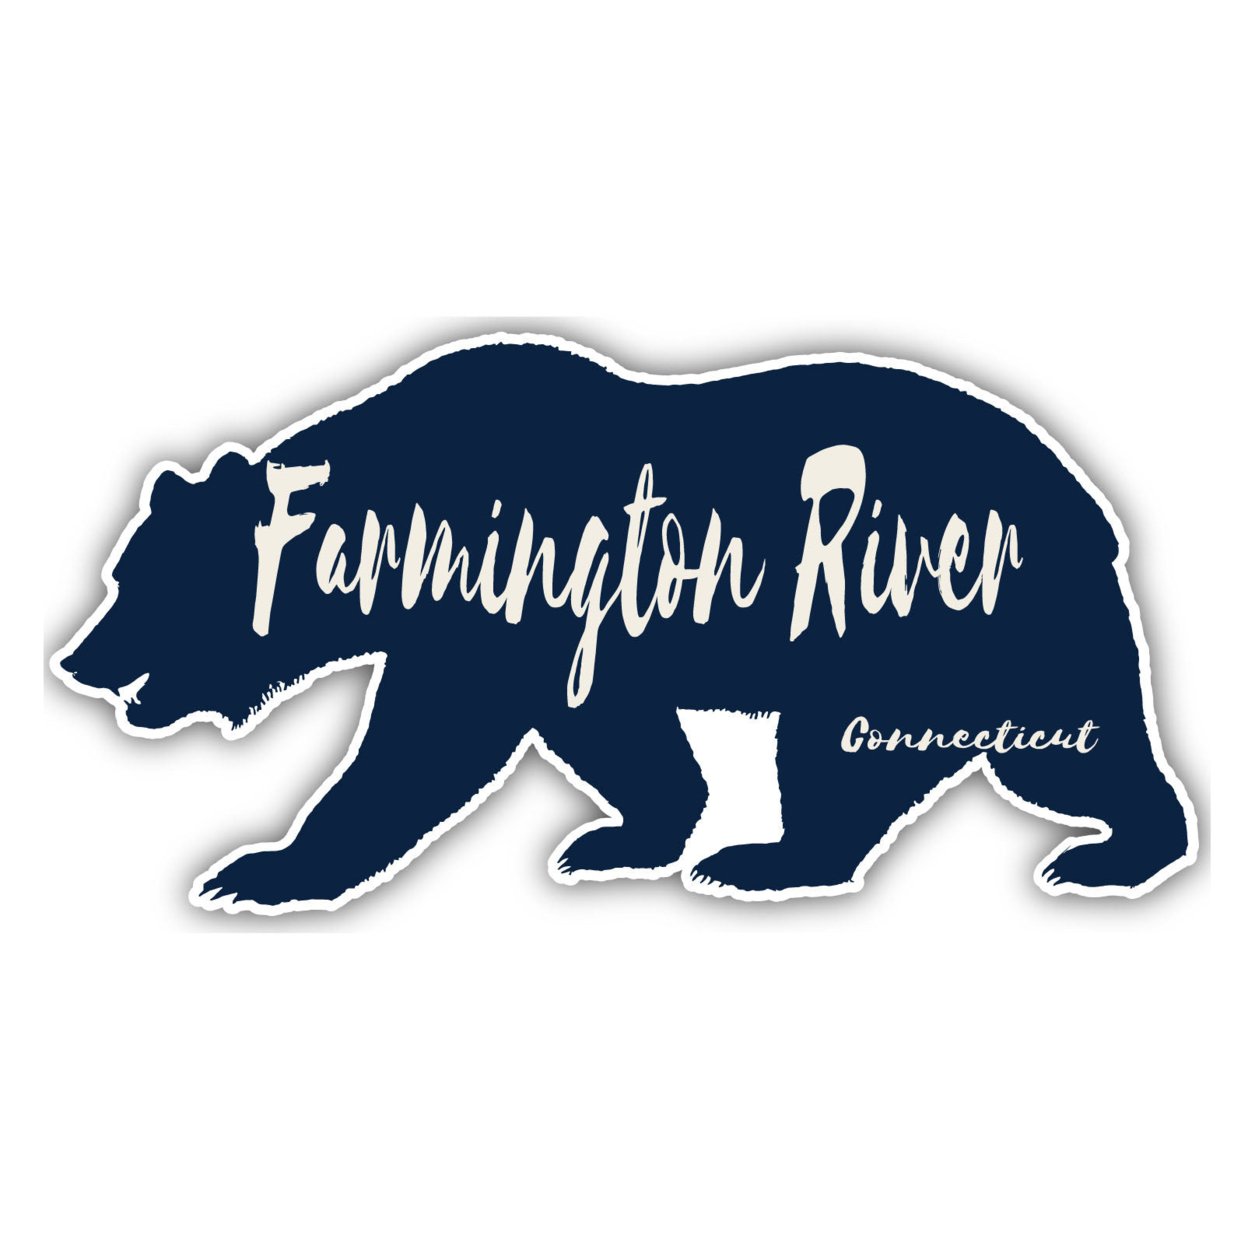 Farmington River Connecticut Souvenir Decorative Stickers (Choose Theme And Size) - Single Unit, 4-Inch, Bear